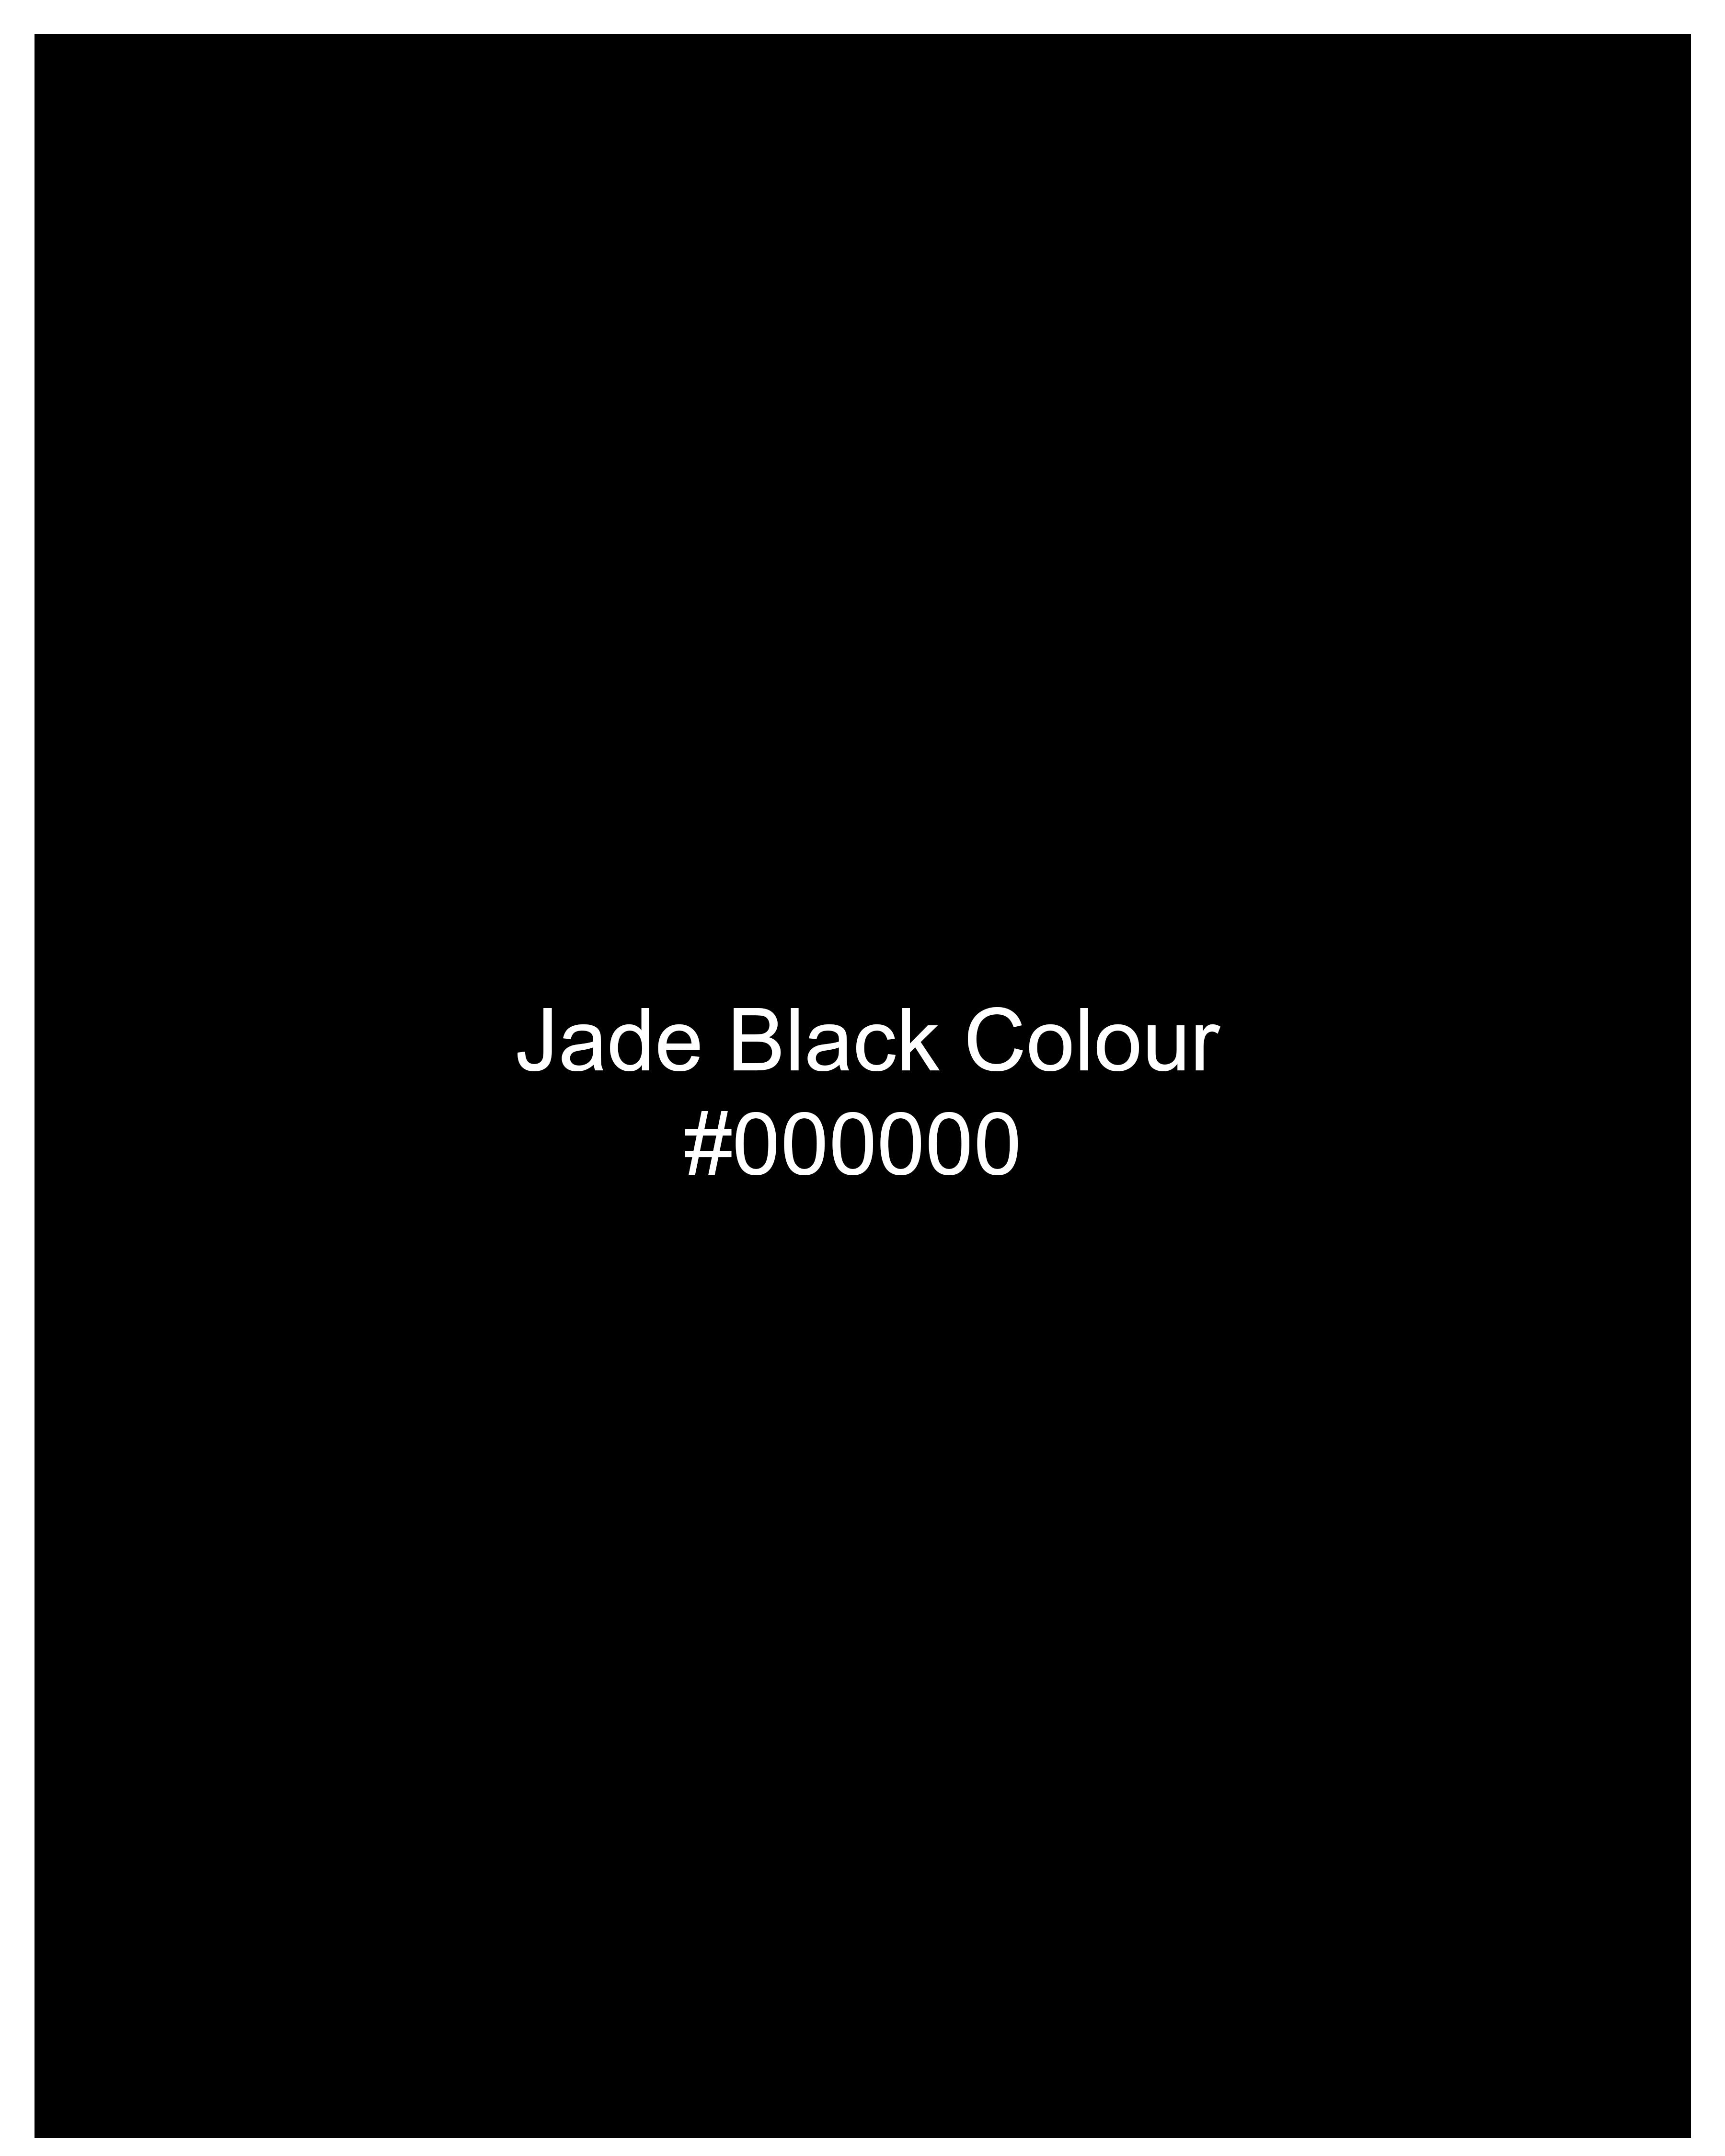 Jade Black Subtle Sheen Pant